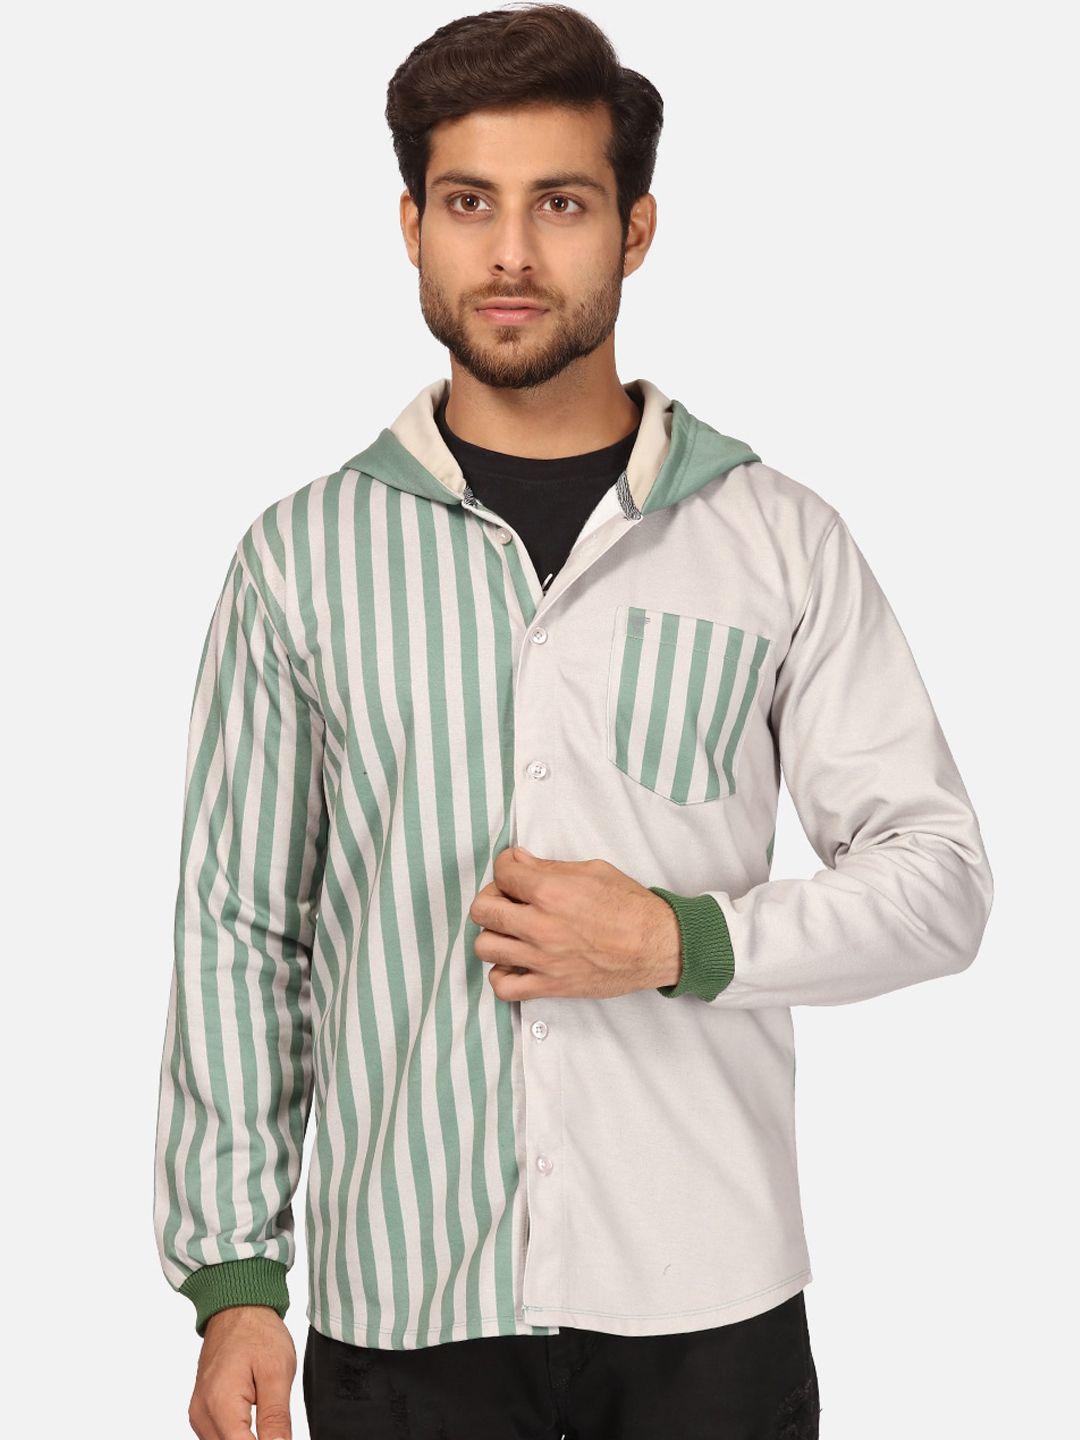 bullmer men green striped fleece hooded sweatshirt